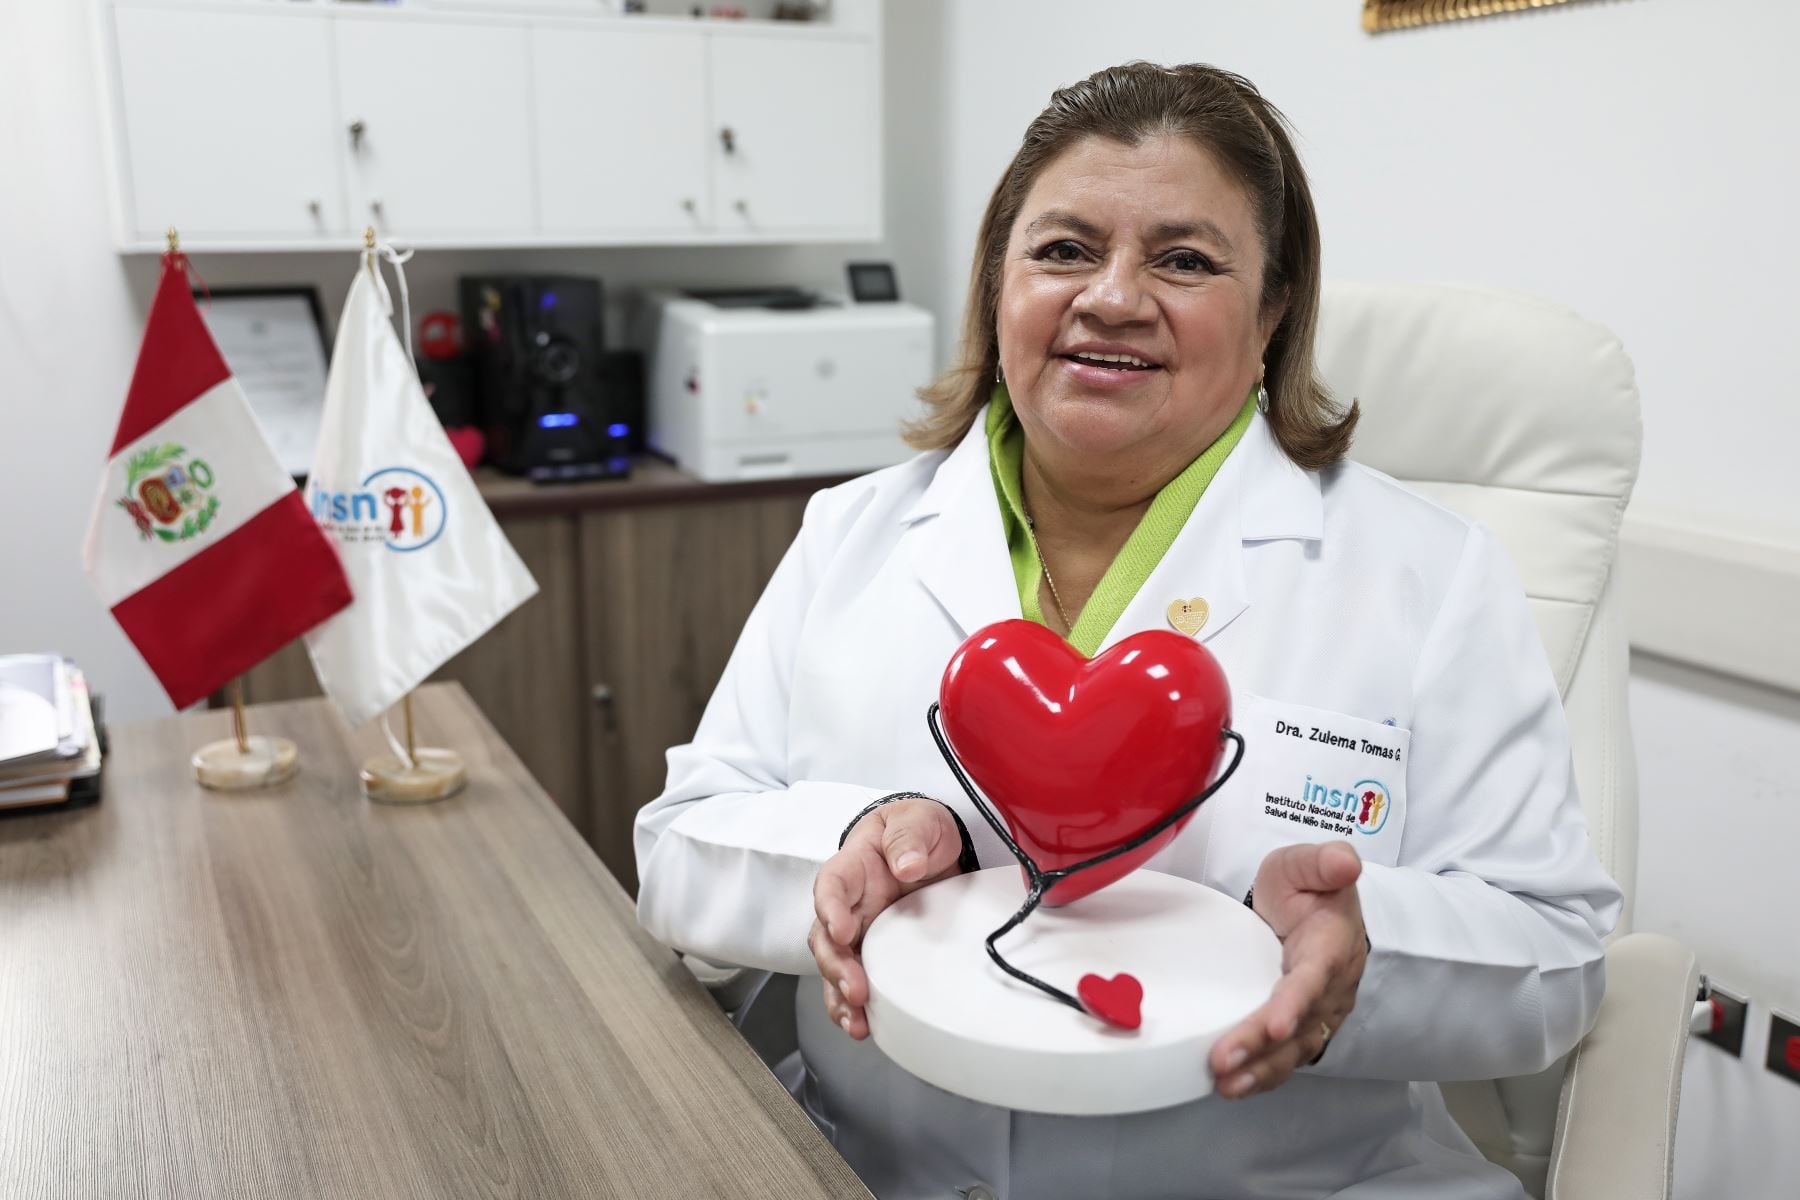 El primer trasplante de corazón infantil del INSN San Borja será un hito para la institución, el cual se ha preparado intensivamente durante los últimos dos años. (Foto: Andina)